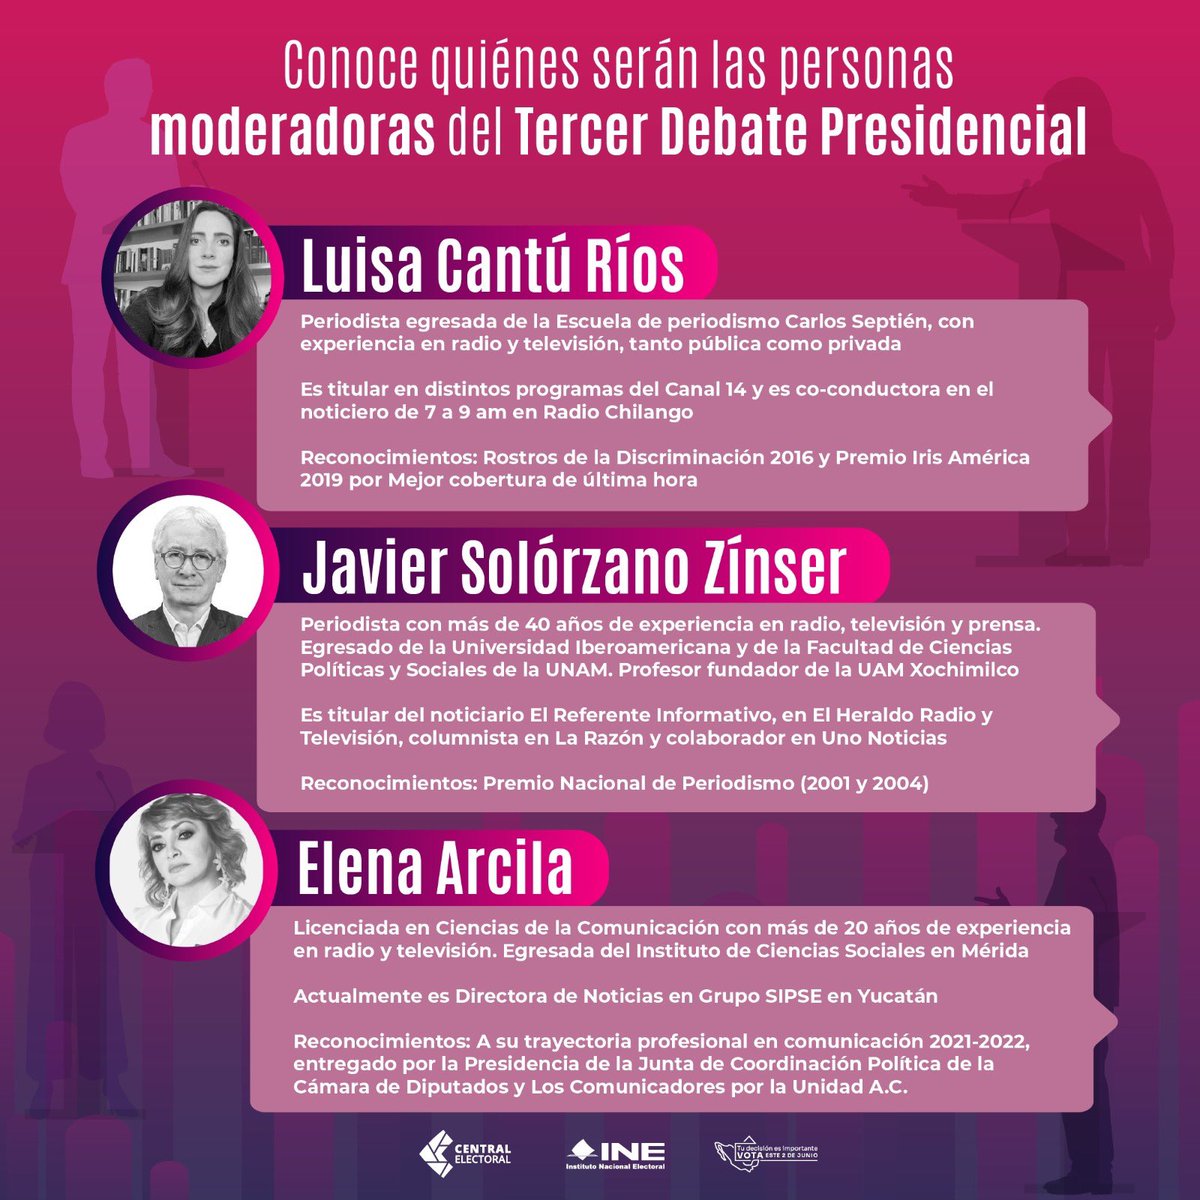 #ALMOMENTO | El #INE aprueba a Luisa Cantú Ríos, Elena Arcila y Javier Solórzano Zínser como los moderadores del tercer debate presidencial